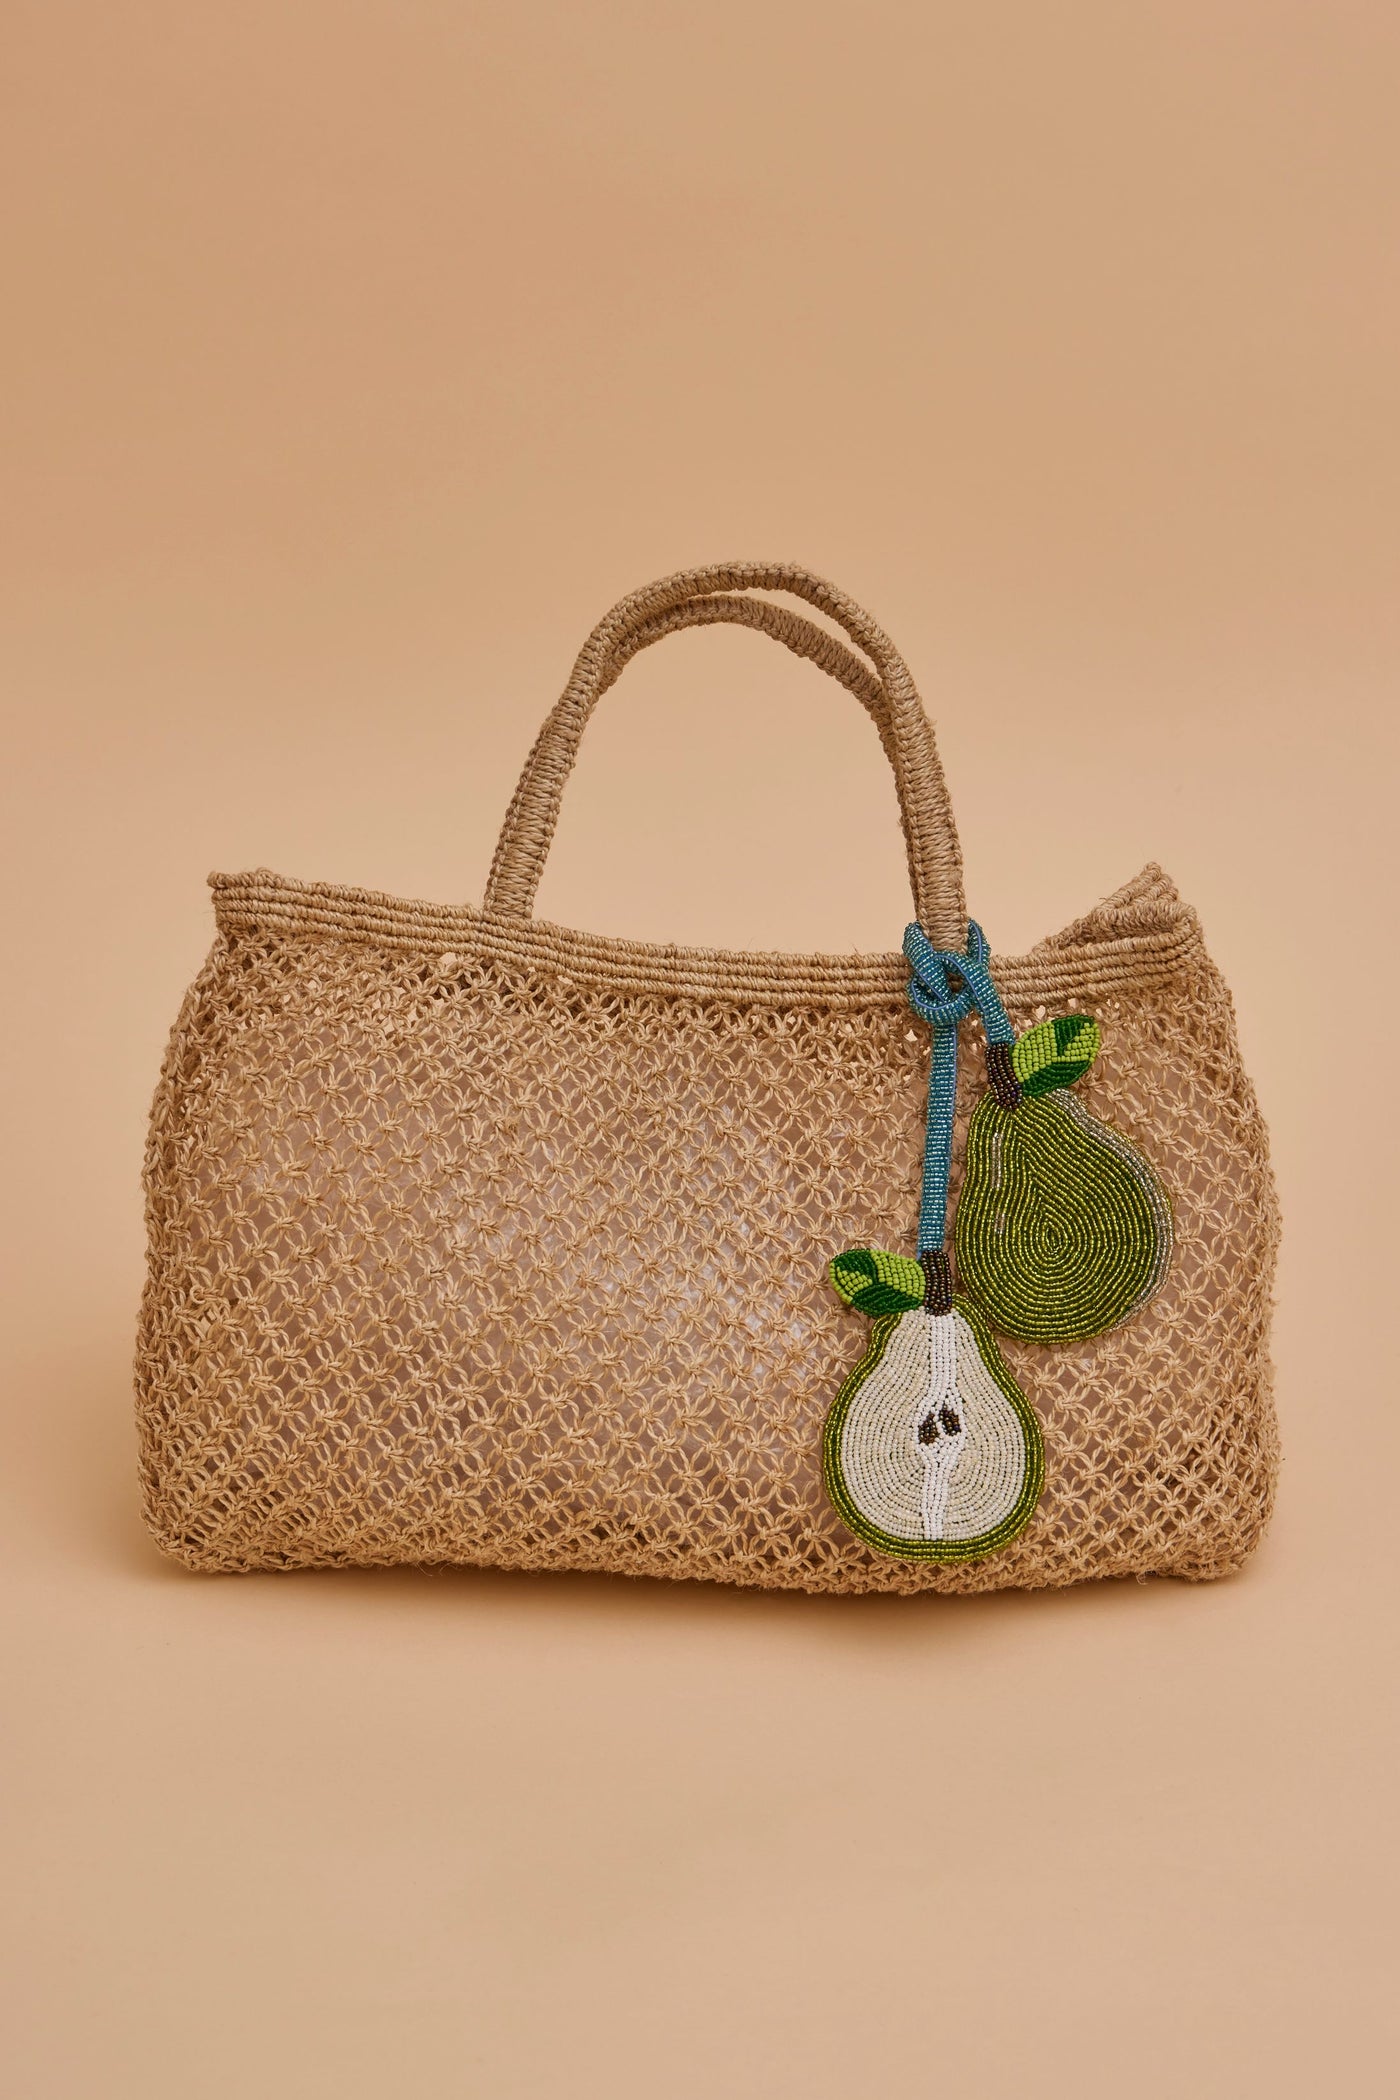 Beaded Bag Charm - Pear